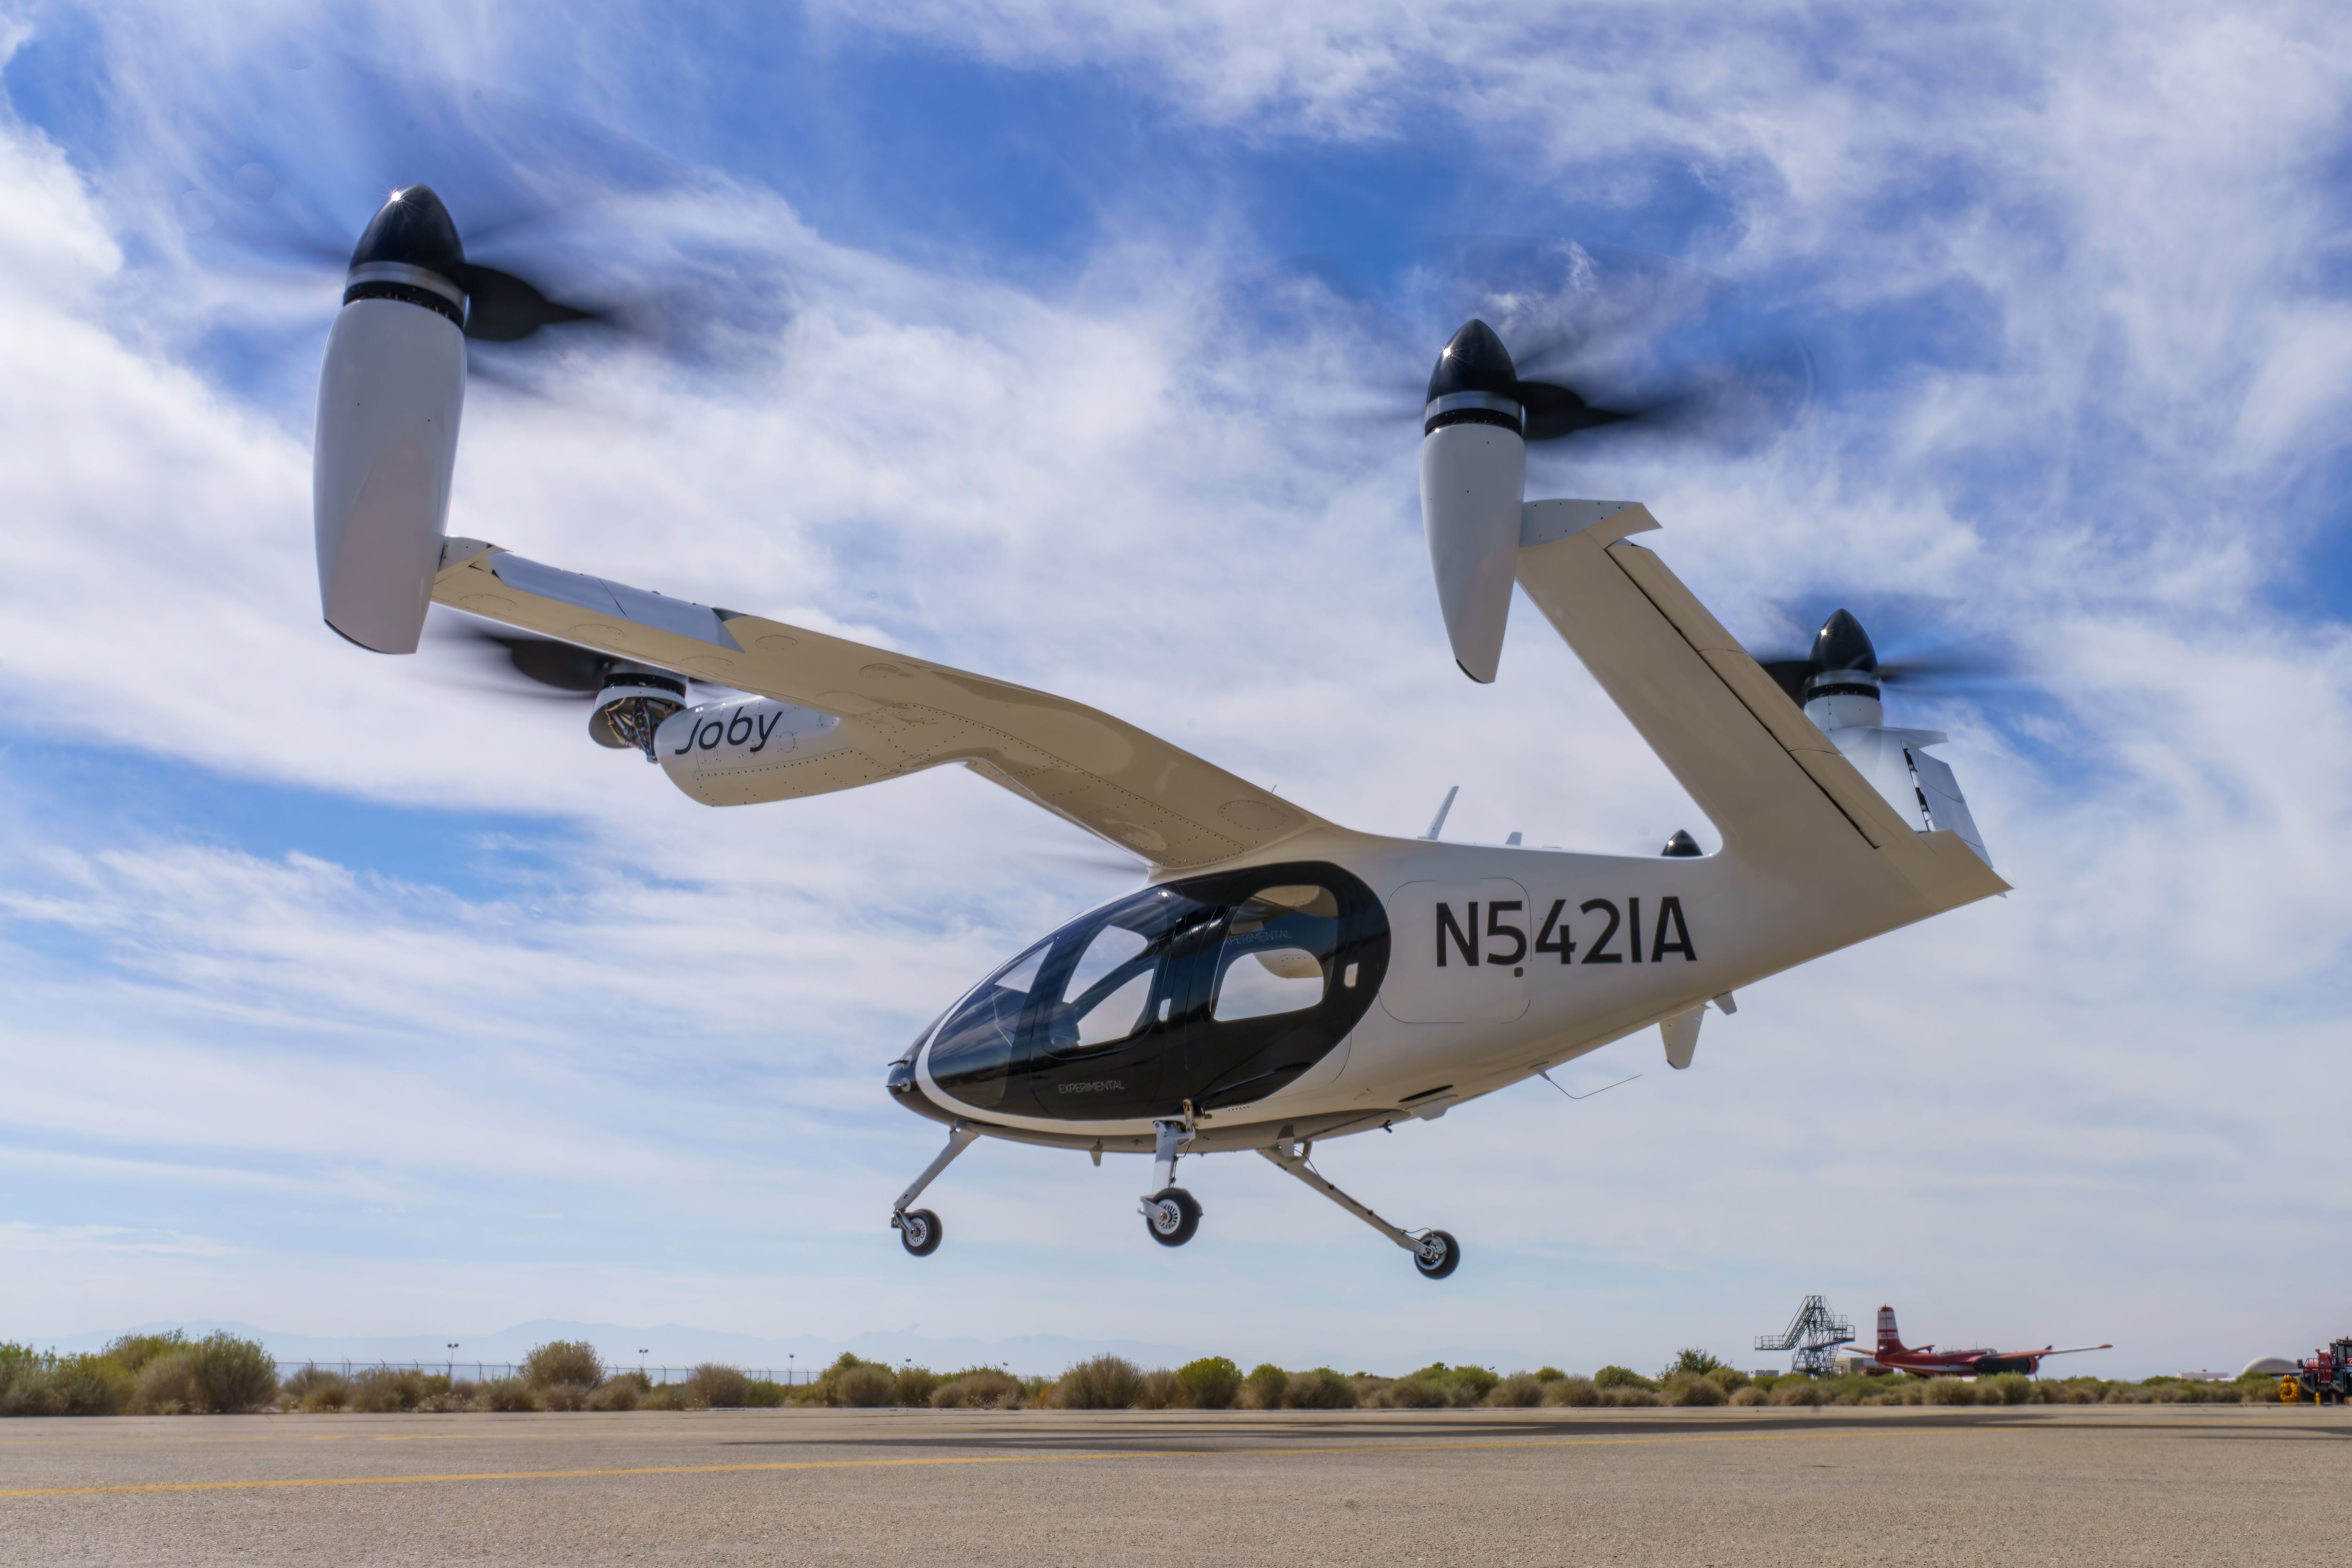 Avion: Avion builds and operates autonomous eVTOL drones that